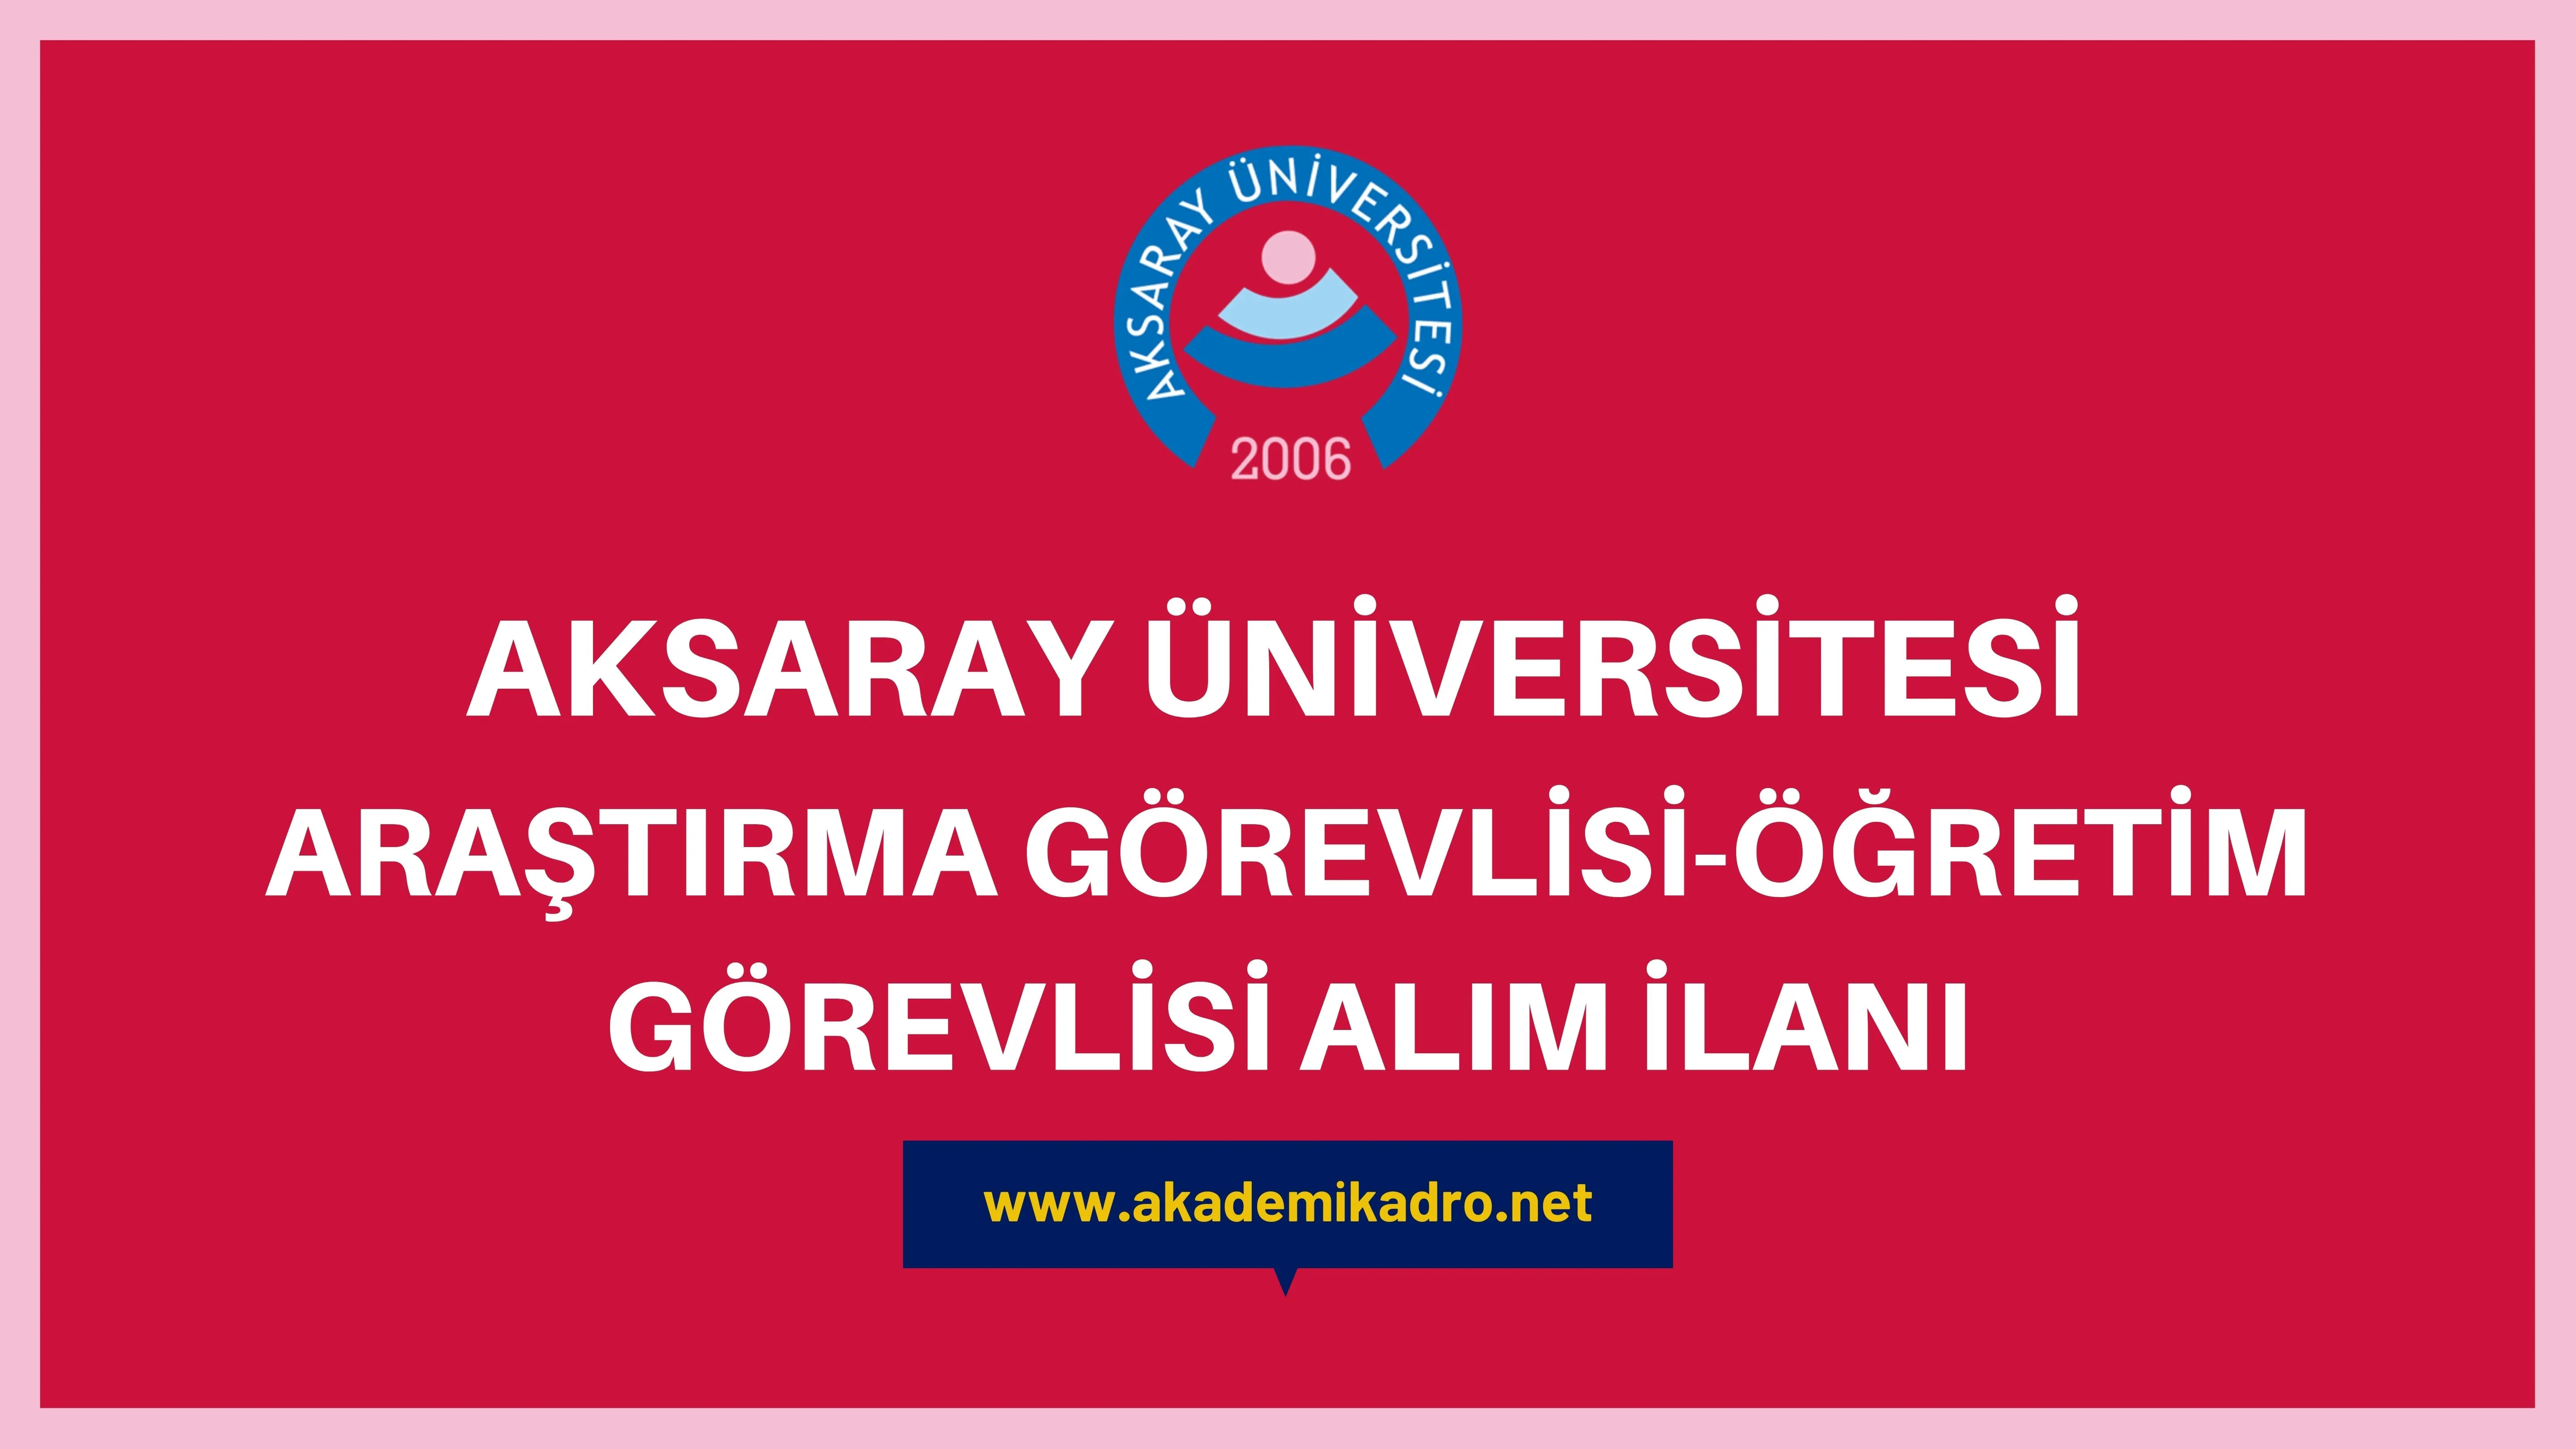 Aksaray Üniversitesi 9 Araştırma görevlisi ve 3 Öğretim görevlisi alacak.